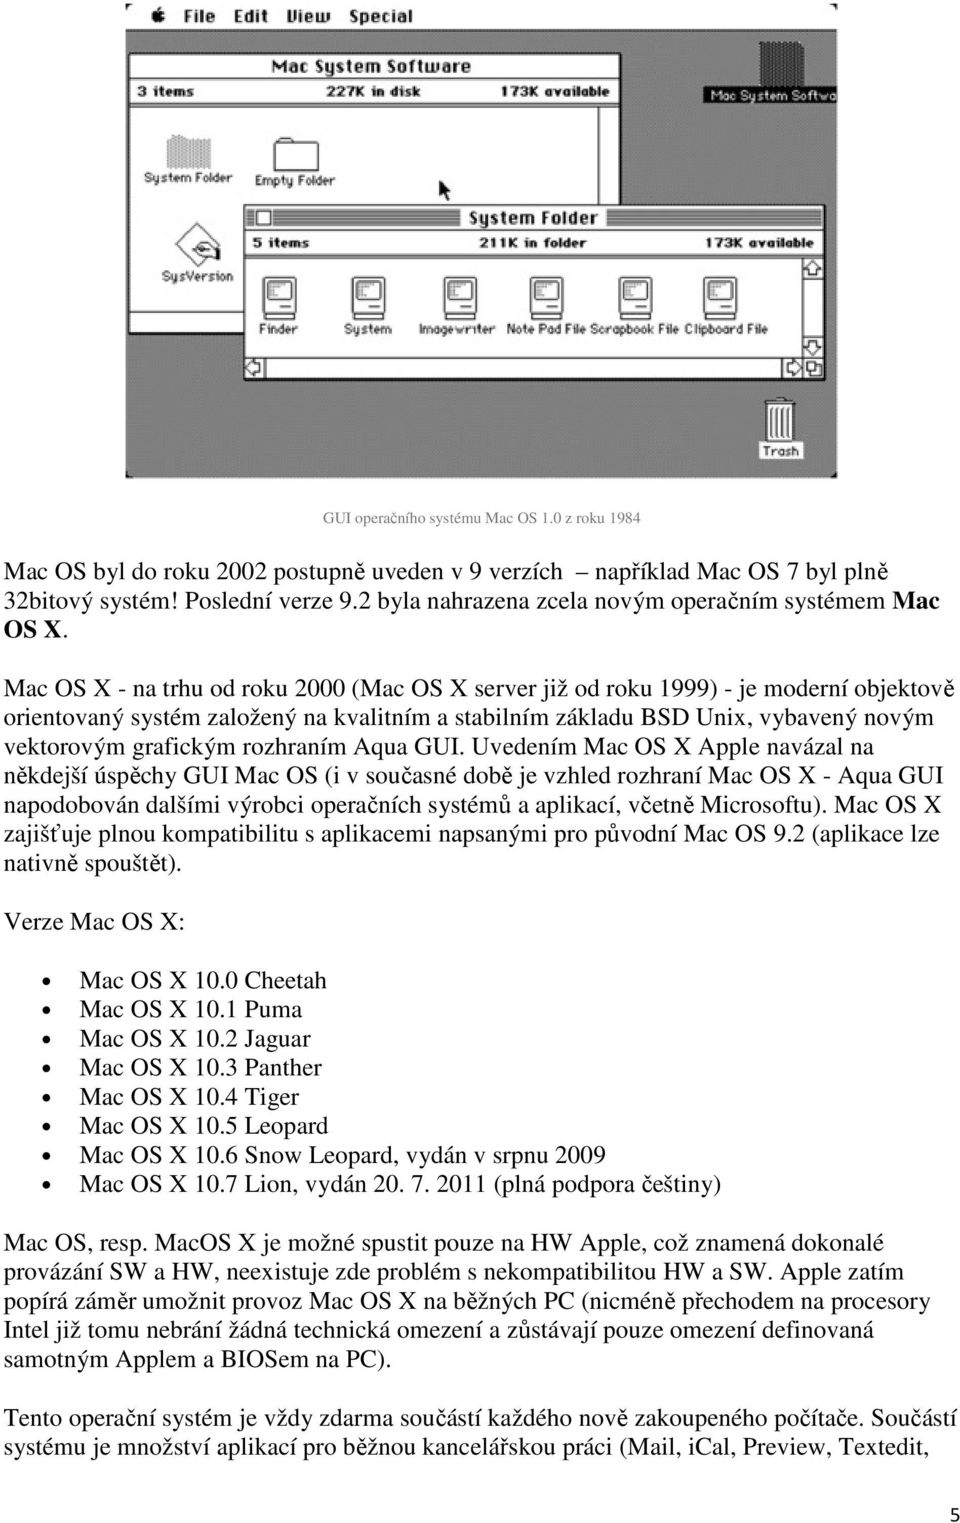 Mac OS X - na trhu od roku 2000 (Mac OS X server již od roku 1999) - je moderní objektově orientovaný systém založený na kvalitním a stabilním základu BSD Unix, vybavený novým vektorovým grafickým